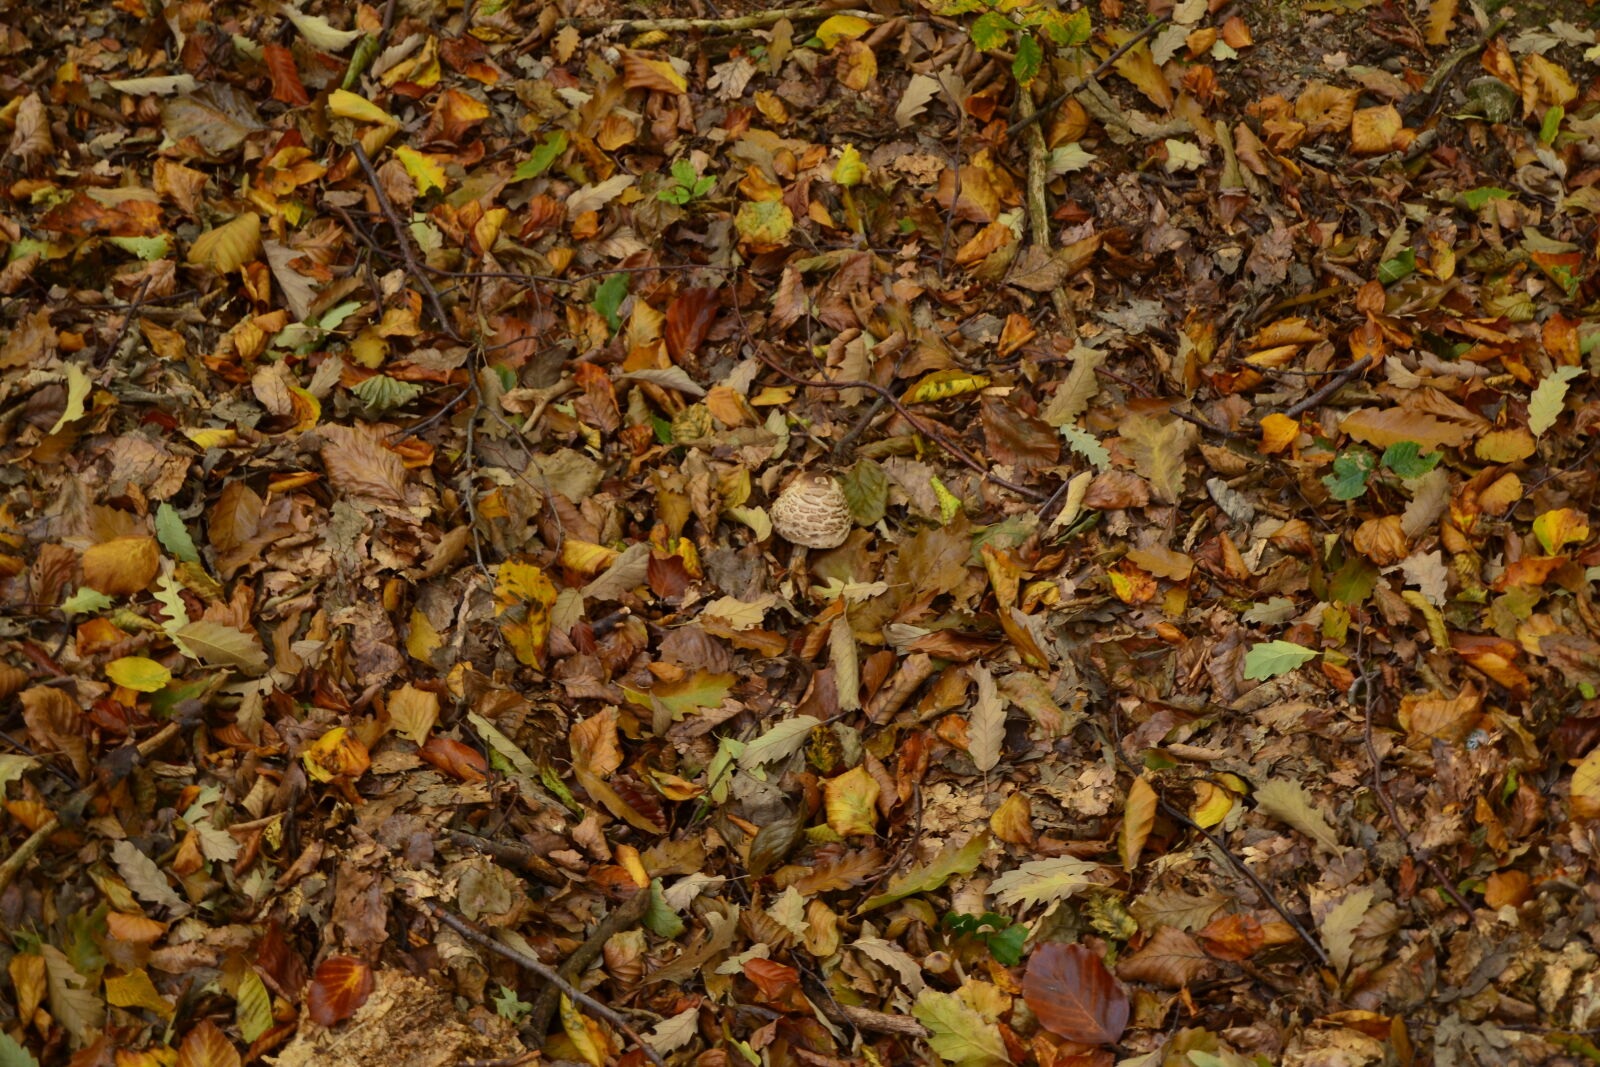 Nikon D3100 + Nikon AF-S DX Nikkor 18-55mm F3.5-5.6G II sample photo. Autumn, leaves, forest, mushroom photography